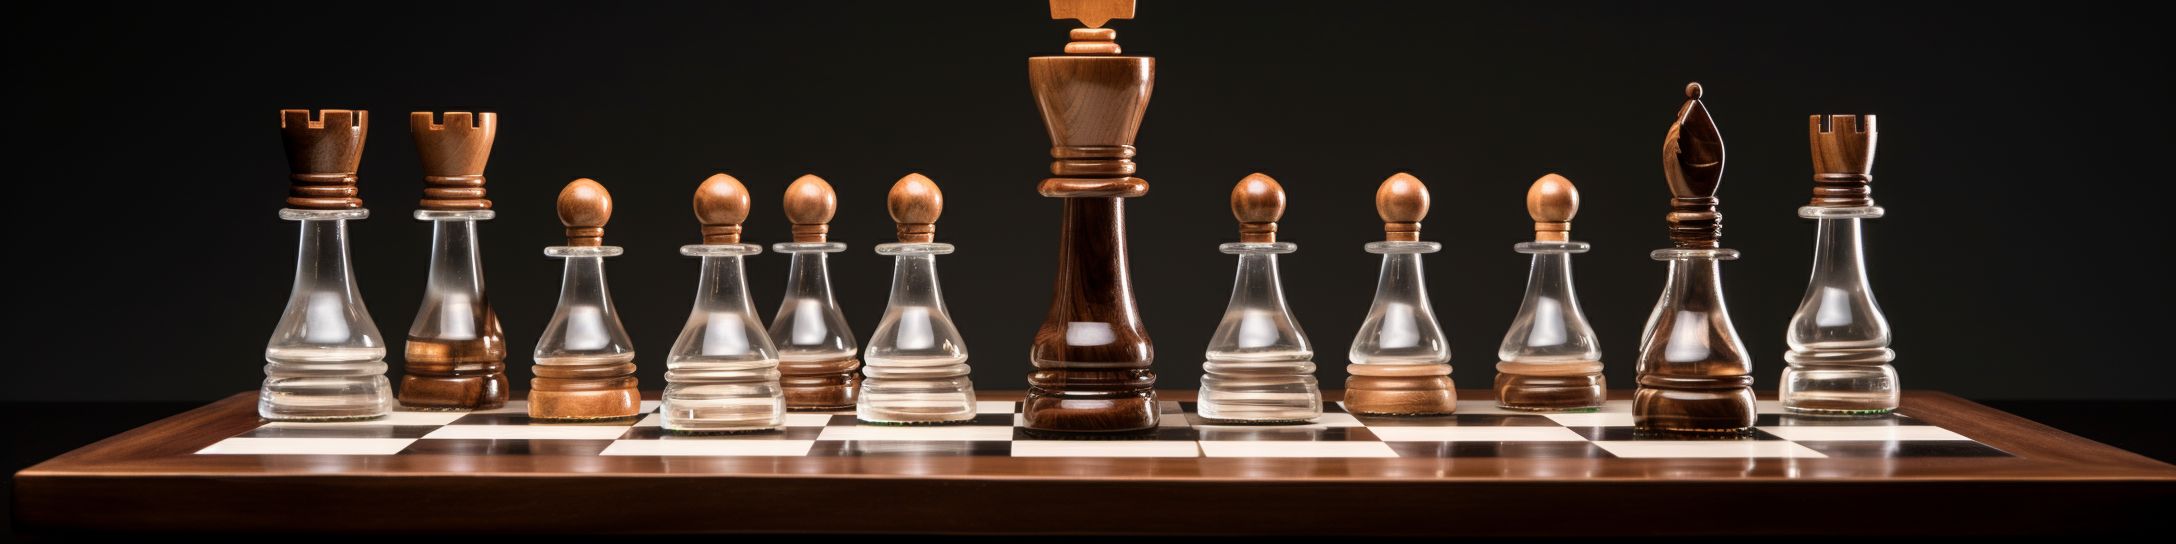 La fusion entre tradition et modernité : le jeu d'échecs mixte bois-verre